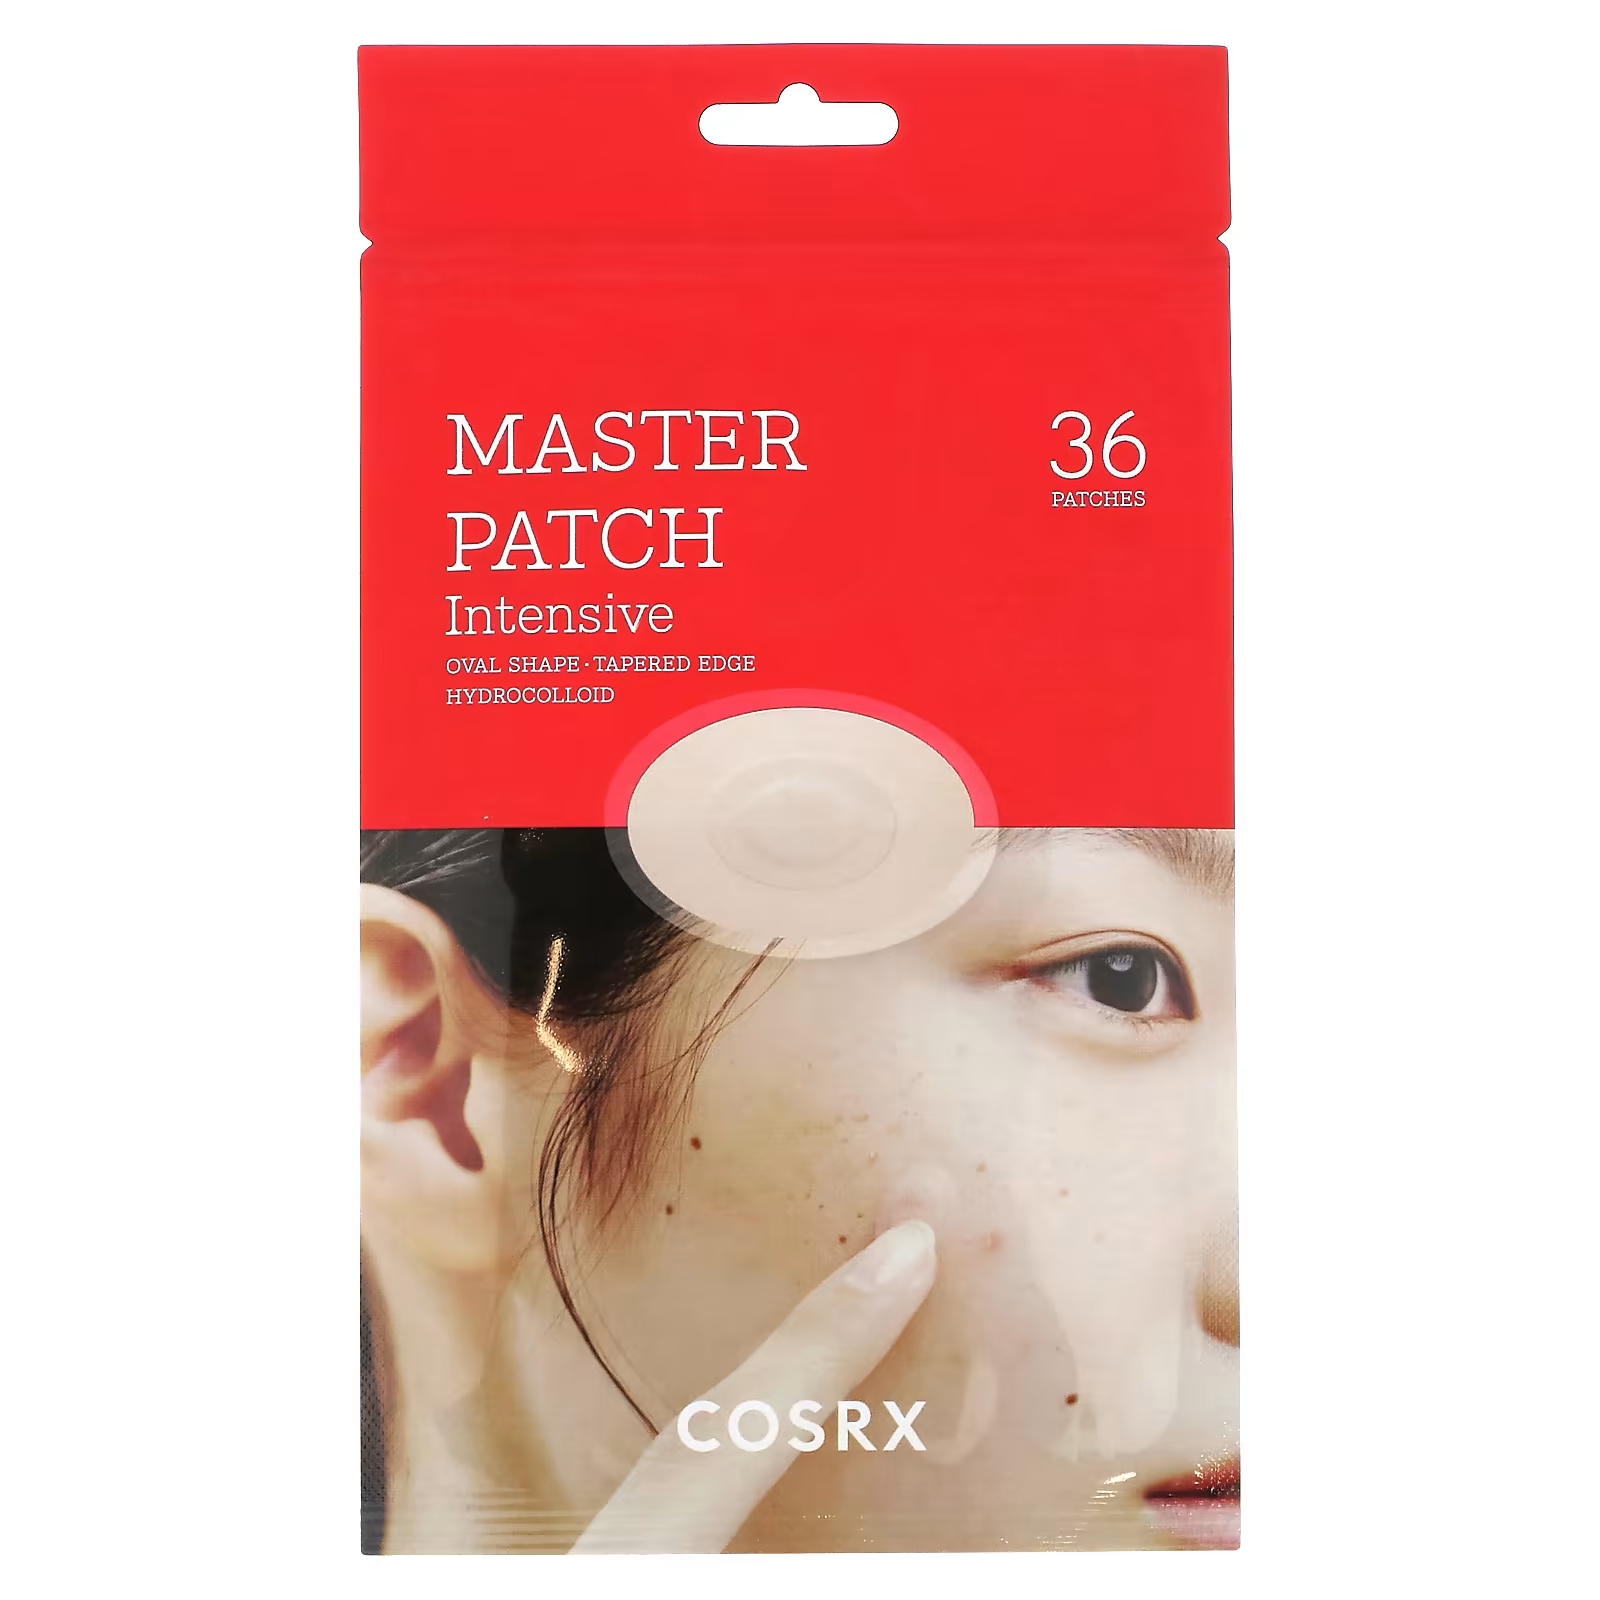 cosrx master patch intensive 36 патчей Патчи гидроколлоидные CosRx Master Patch интенсивные, 36 патчей